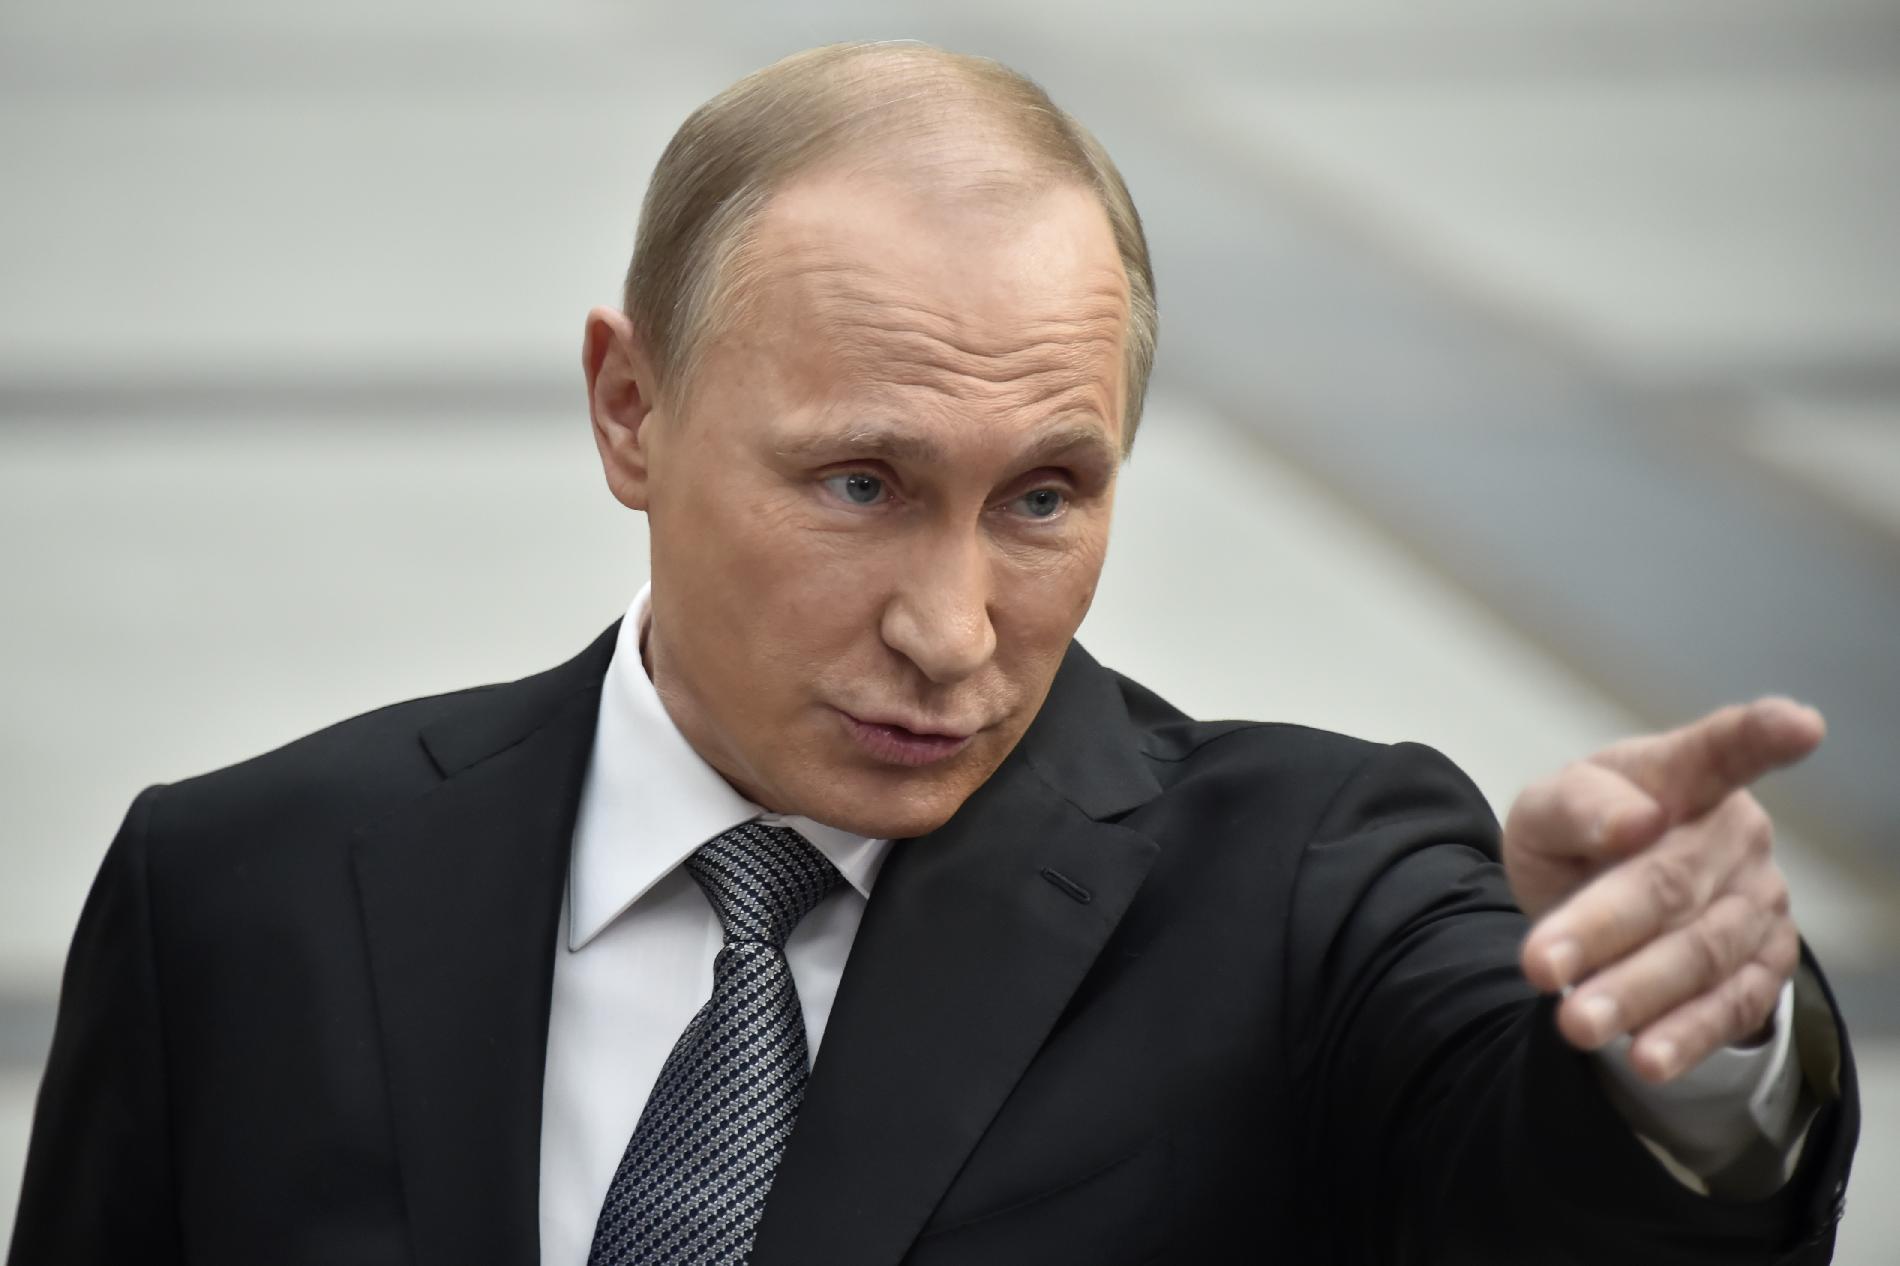 Oroszország nem hagyja válasz nélkül az újabb uniós szankciókat